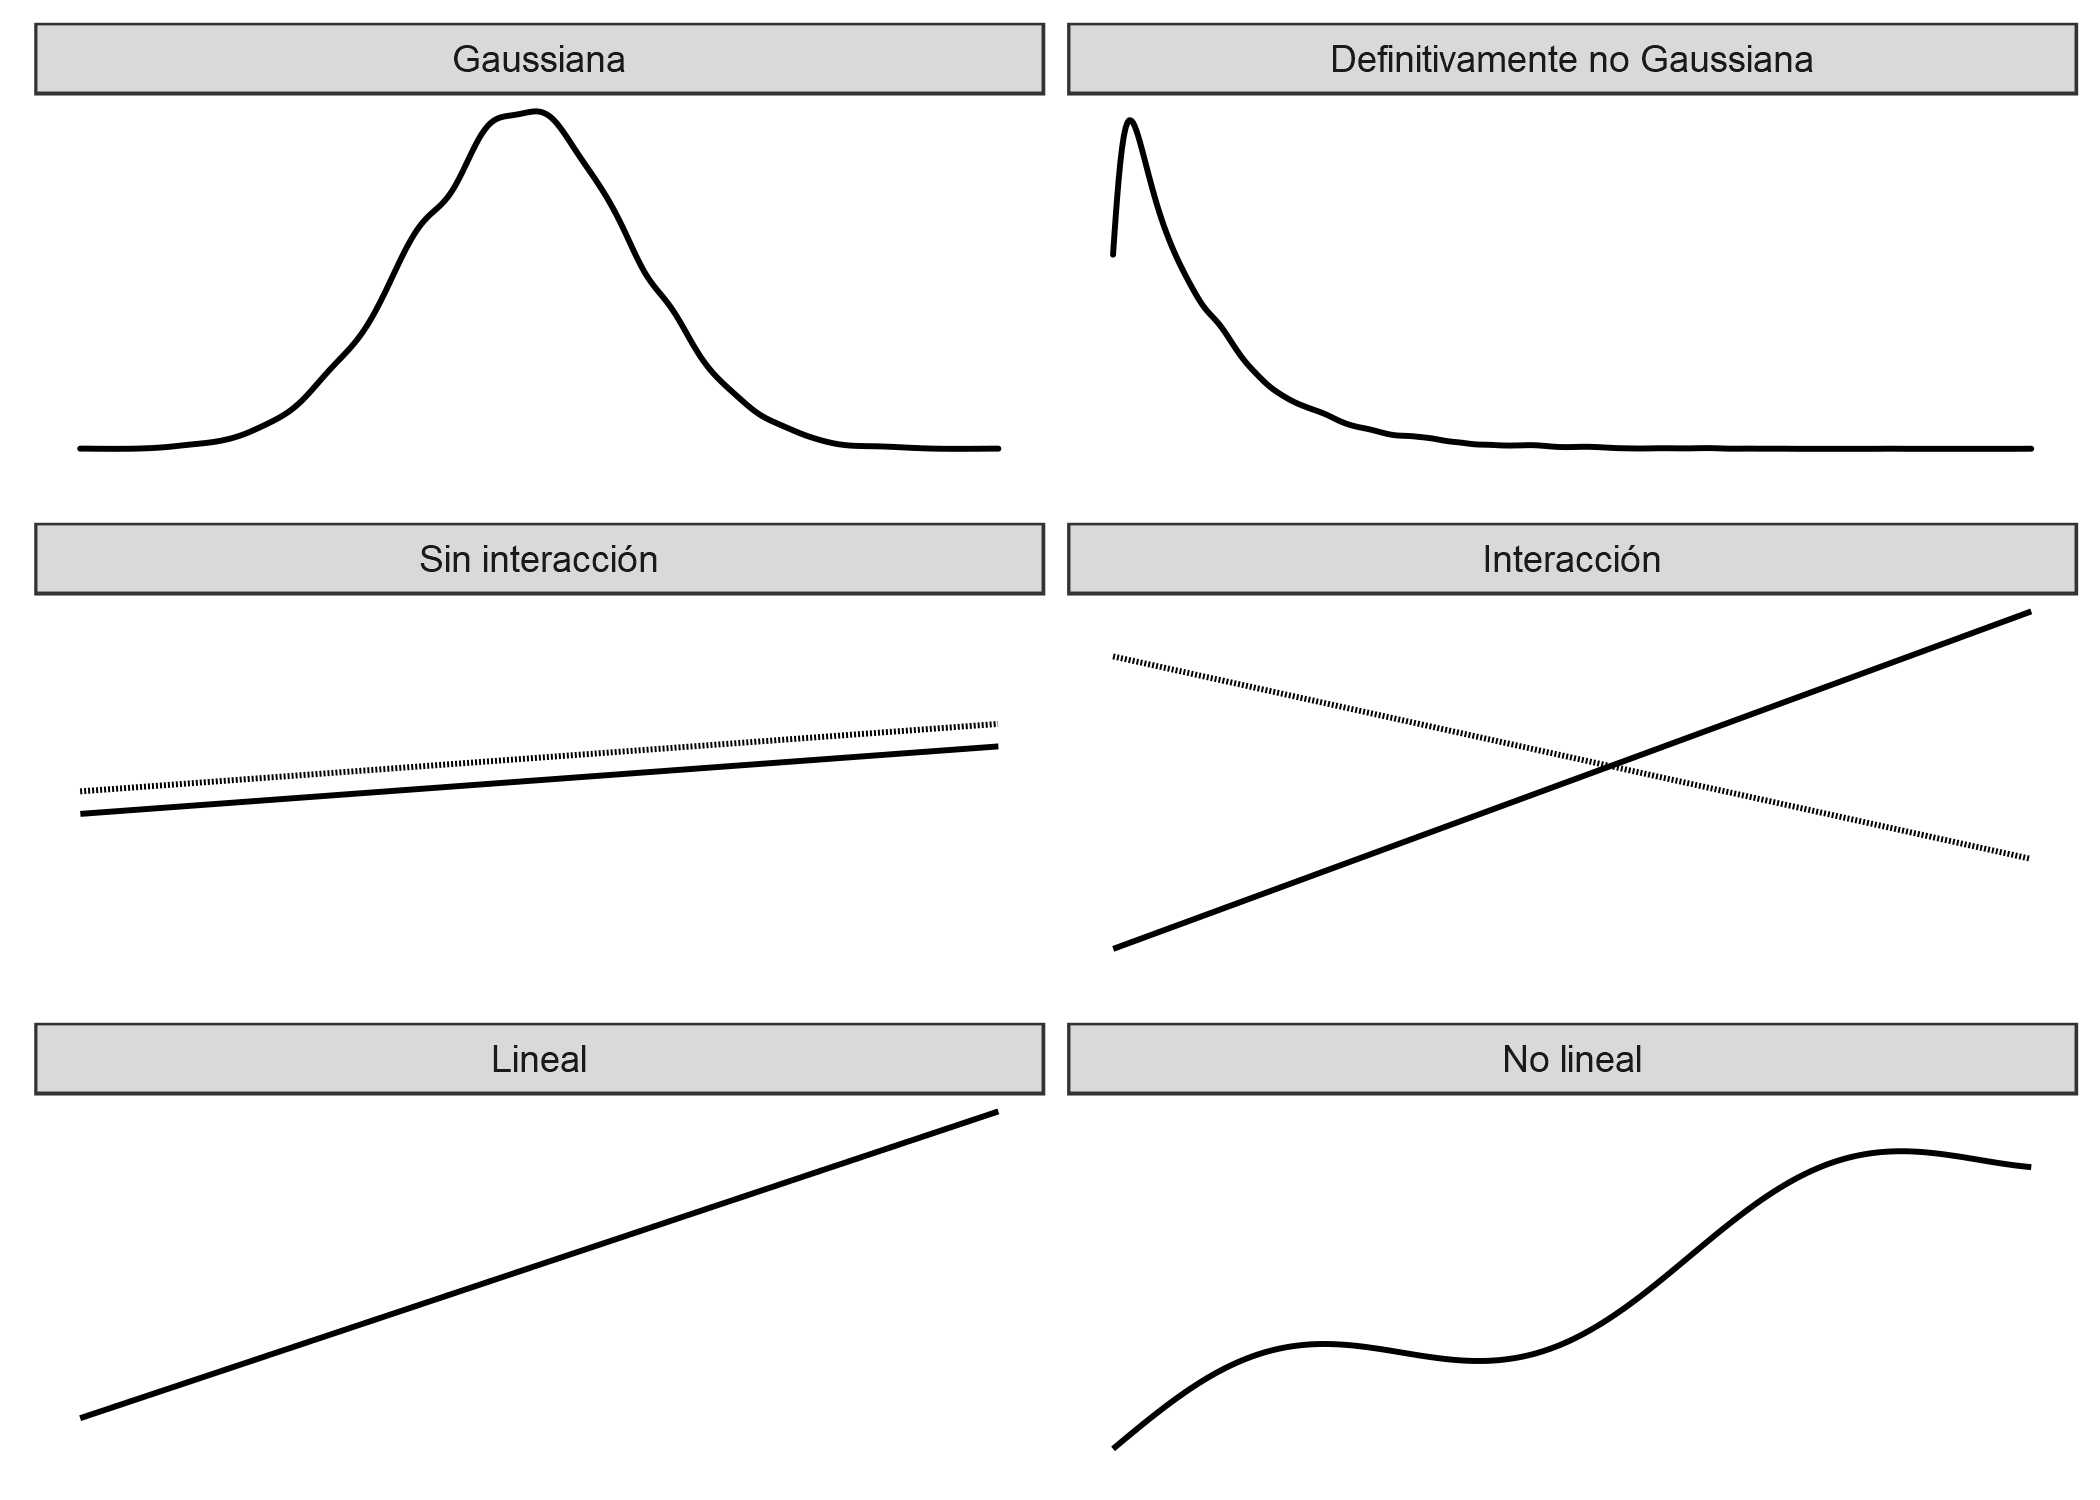 Tres supuestos del modelo lineal (lado izquierdo): distribución gaussiana del resultado dadas las características, la aditividad (= sin interacciones) y la relación lineal. La realidad generalmente no se adhiere a esos supuestos (lado derecho): los resultados pueden tener distribuciones no gaussianas, las características pueden interactuar y la relación puede ser no lineal.